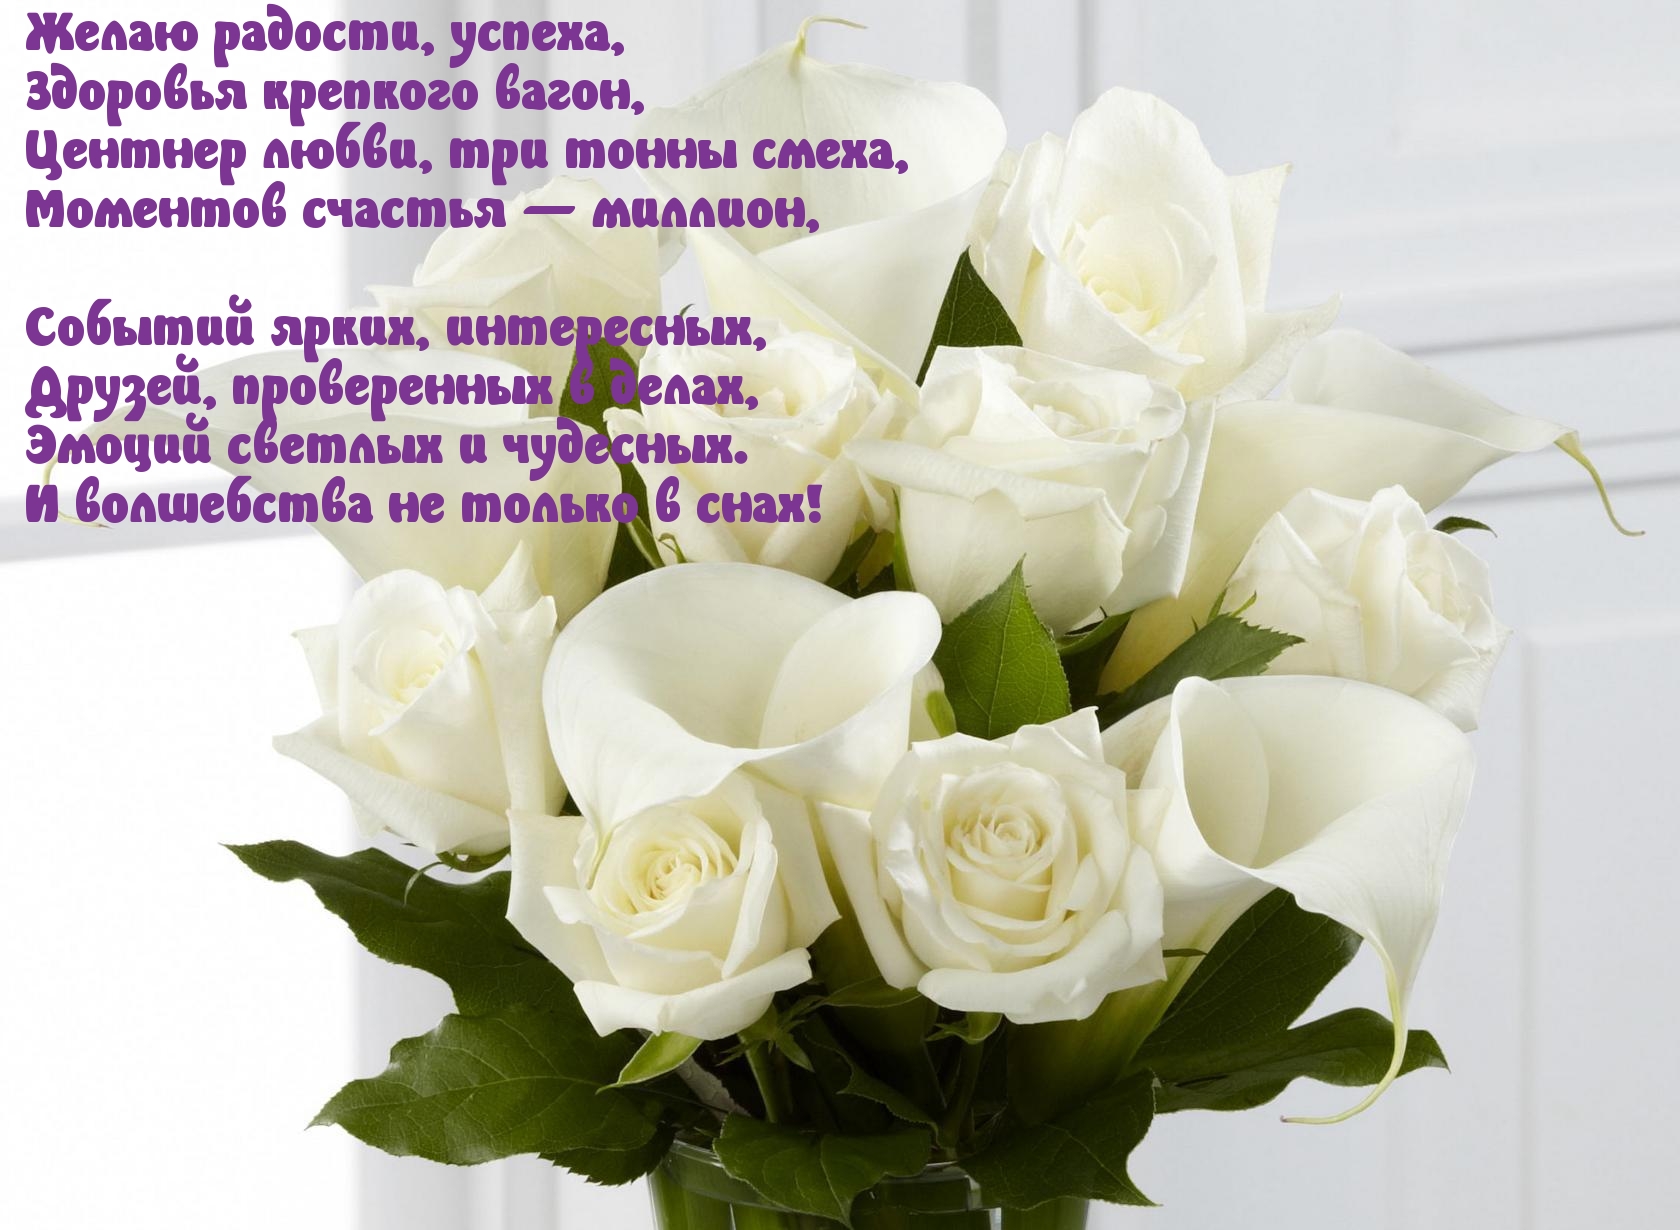 Желаю чтобы душа пела. Белые розы поздравление. С днём рождения женщине белые розы. Открытки с днём рождения женщине белые розы. Открытки с белыми розами.